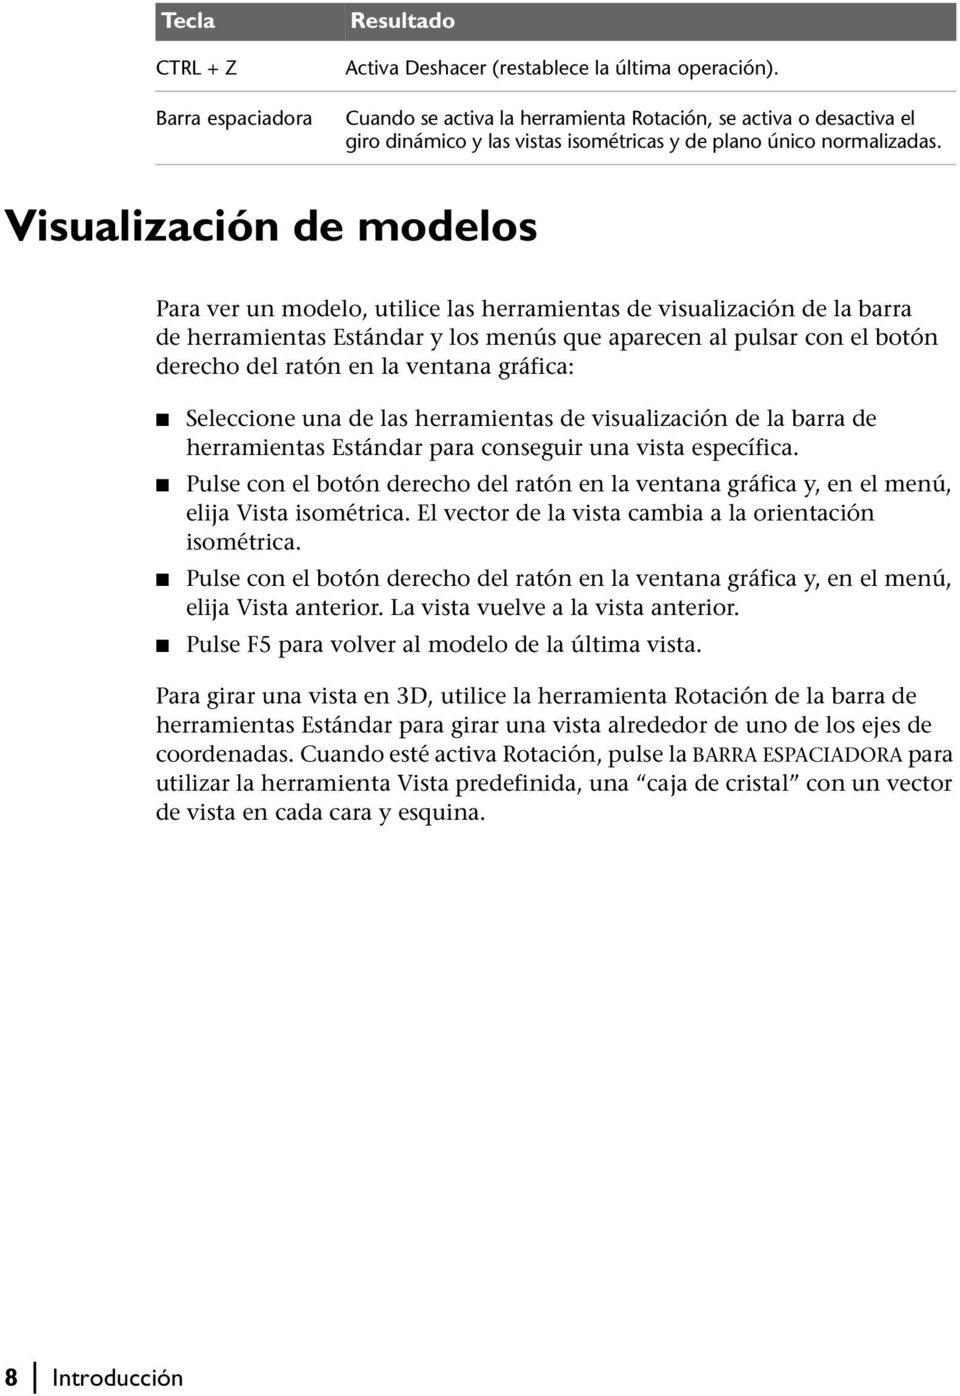 Visualización de modelos Para ver un modelo, utilice las herramientas de visualización de la barra de herramientas Estándar y los menús que aparecen al pulsar con el botón derecho del ratón en la